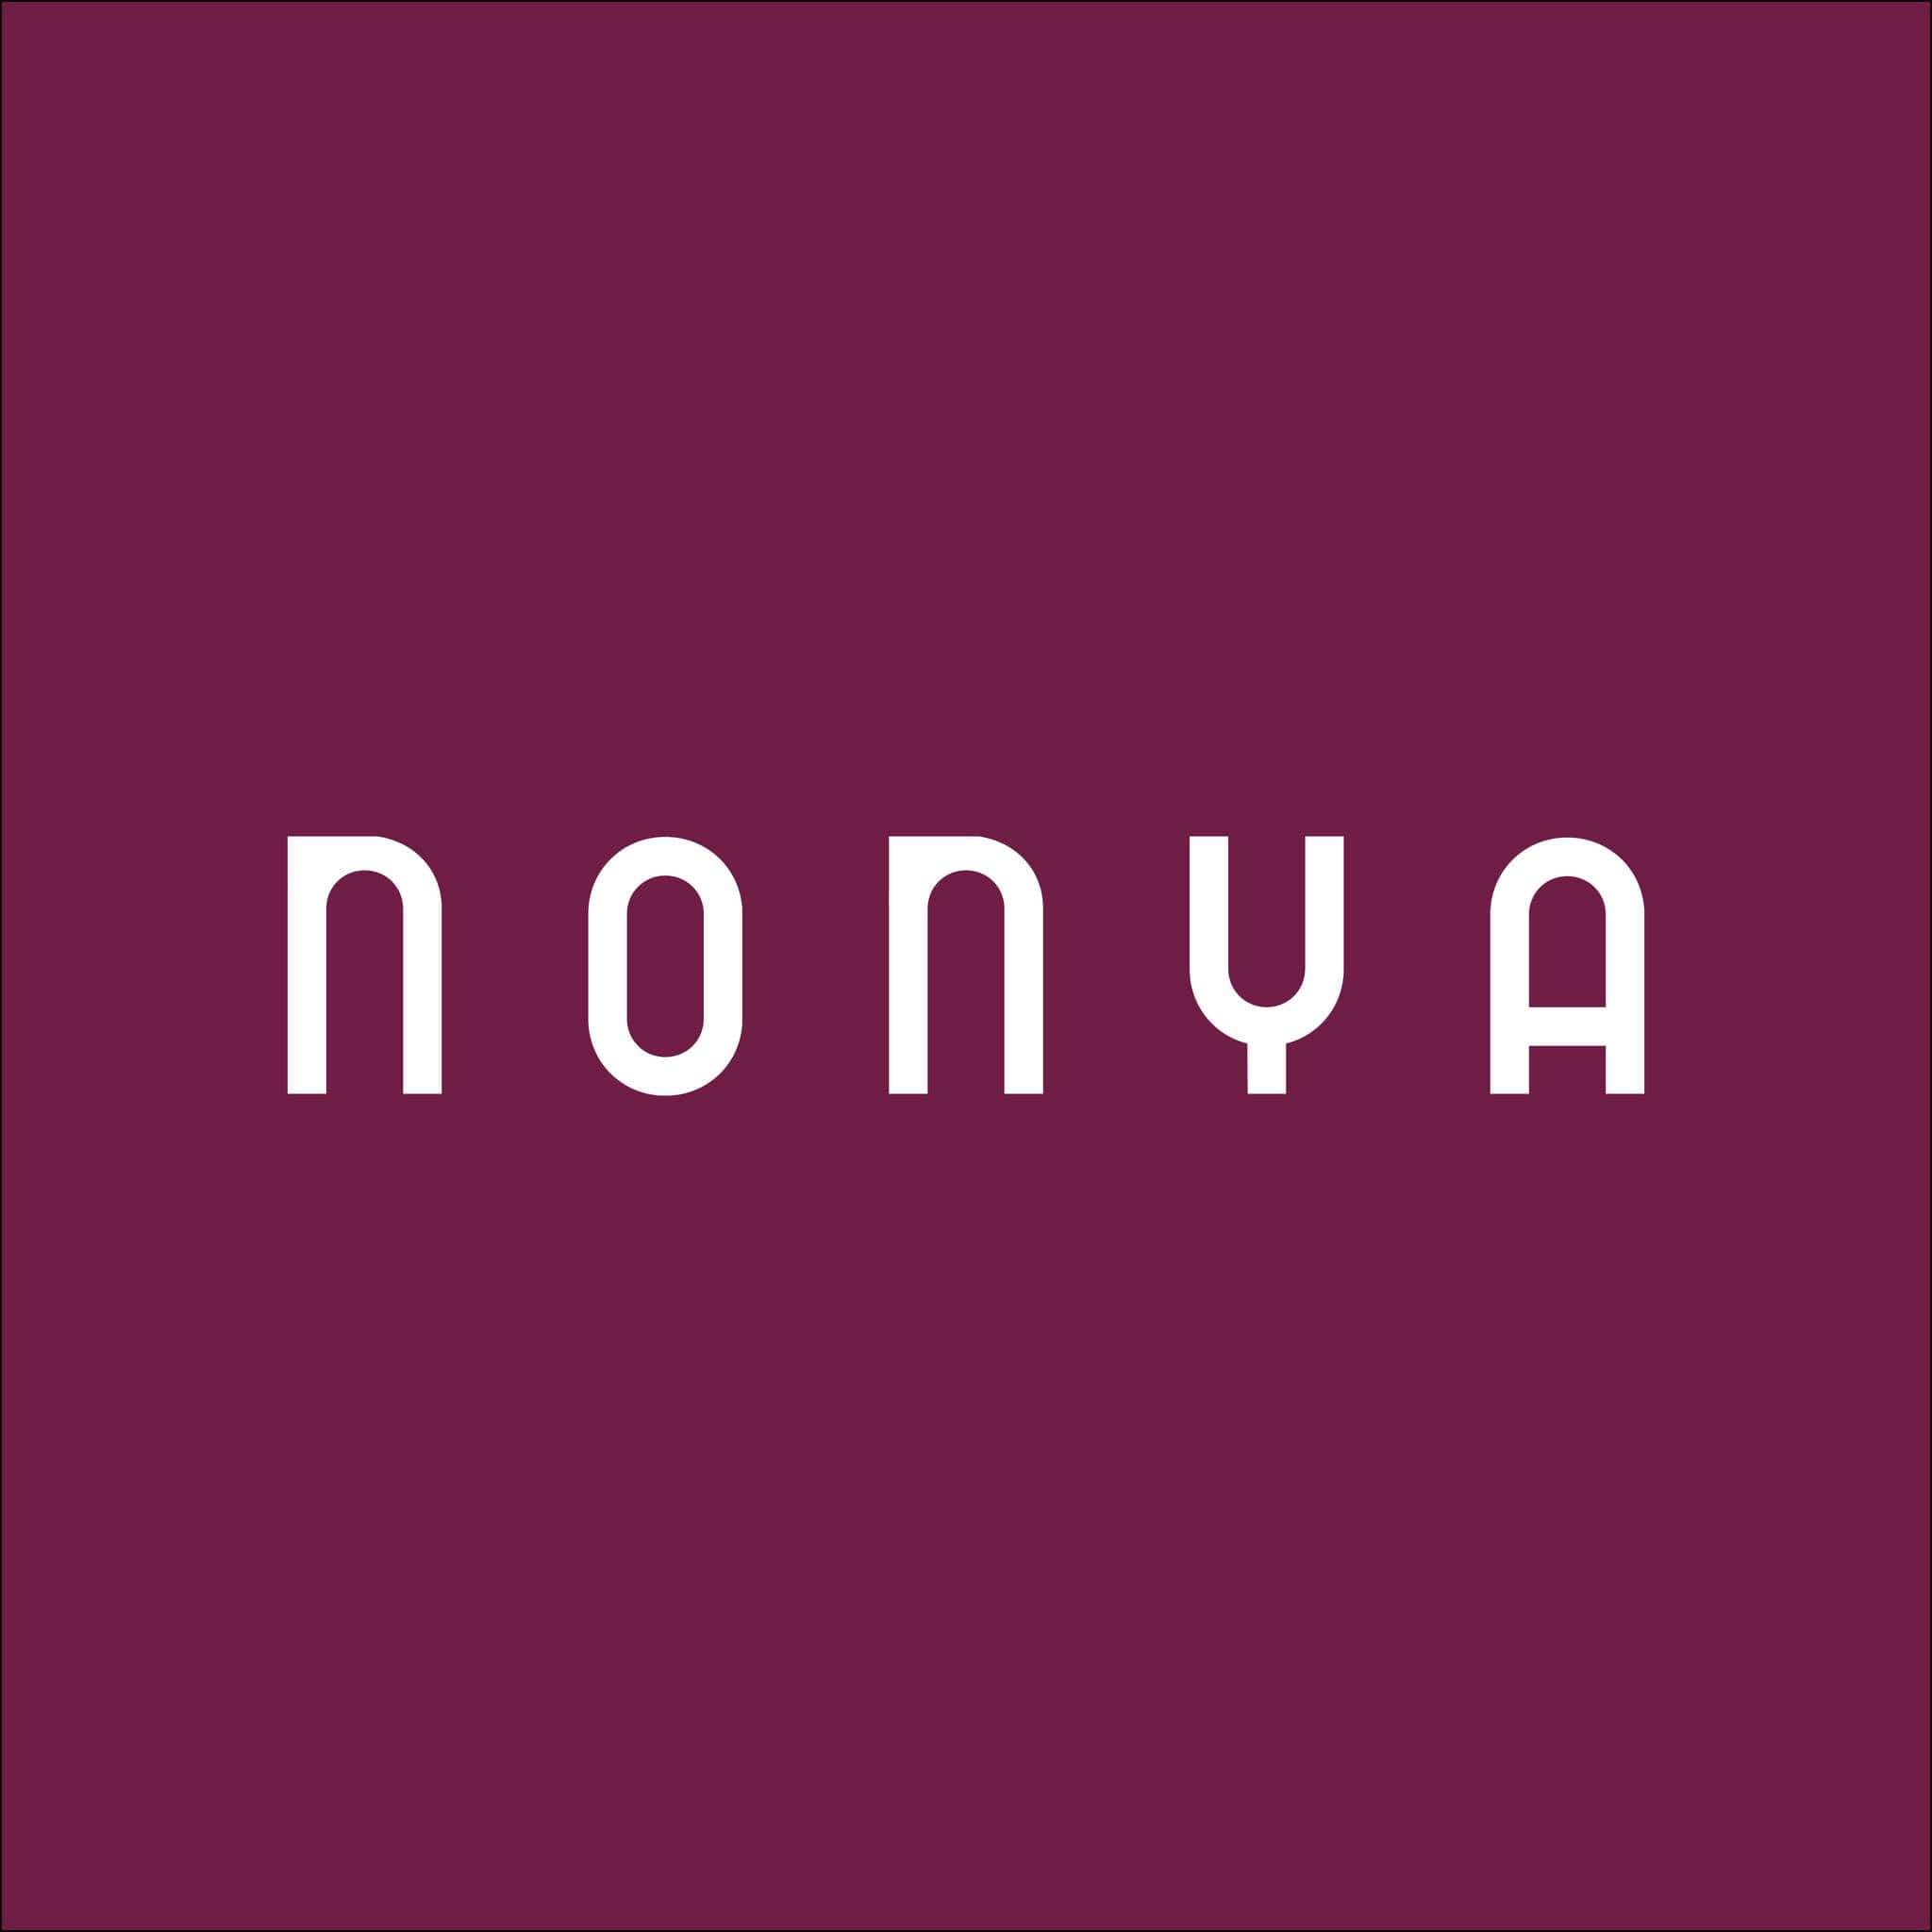 Nonya